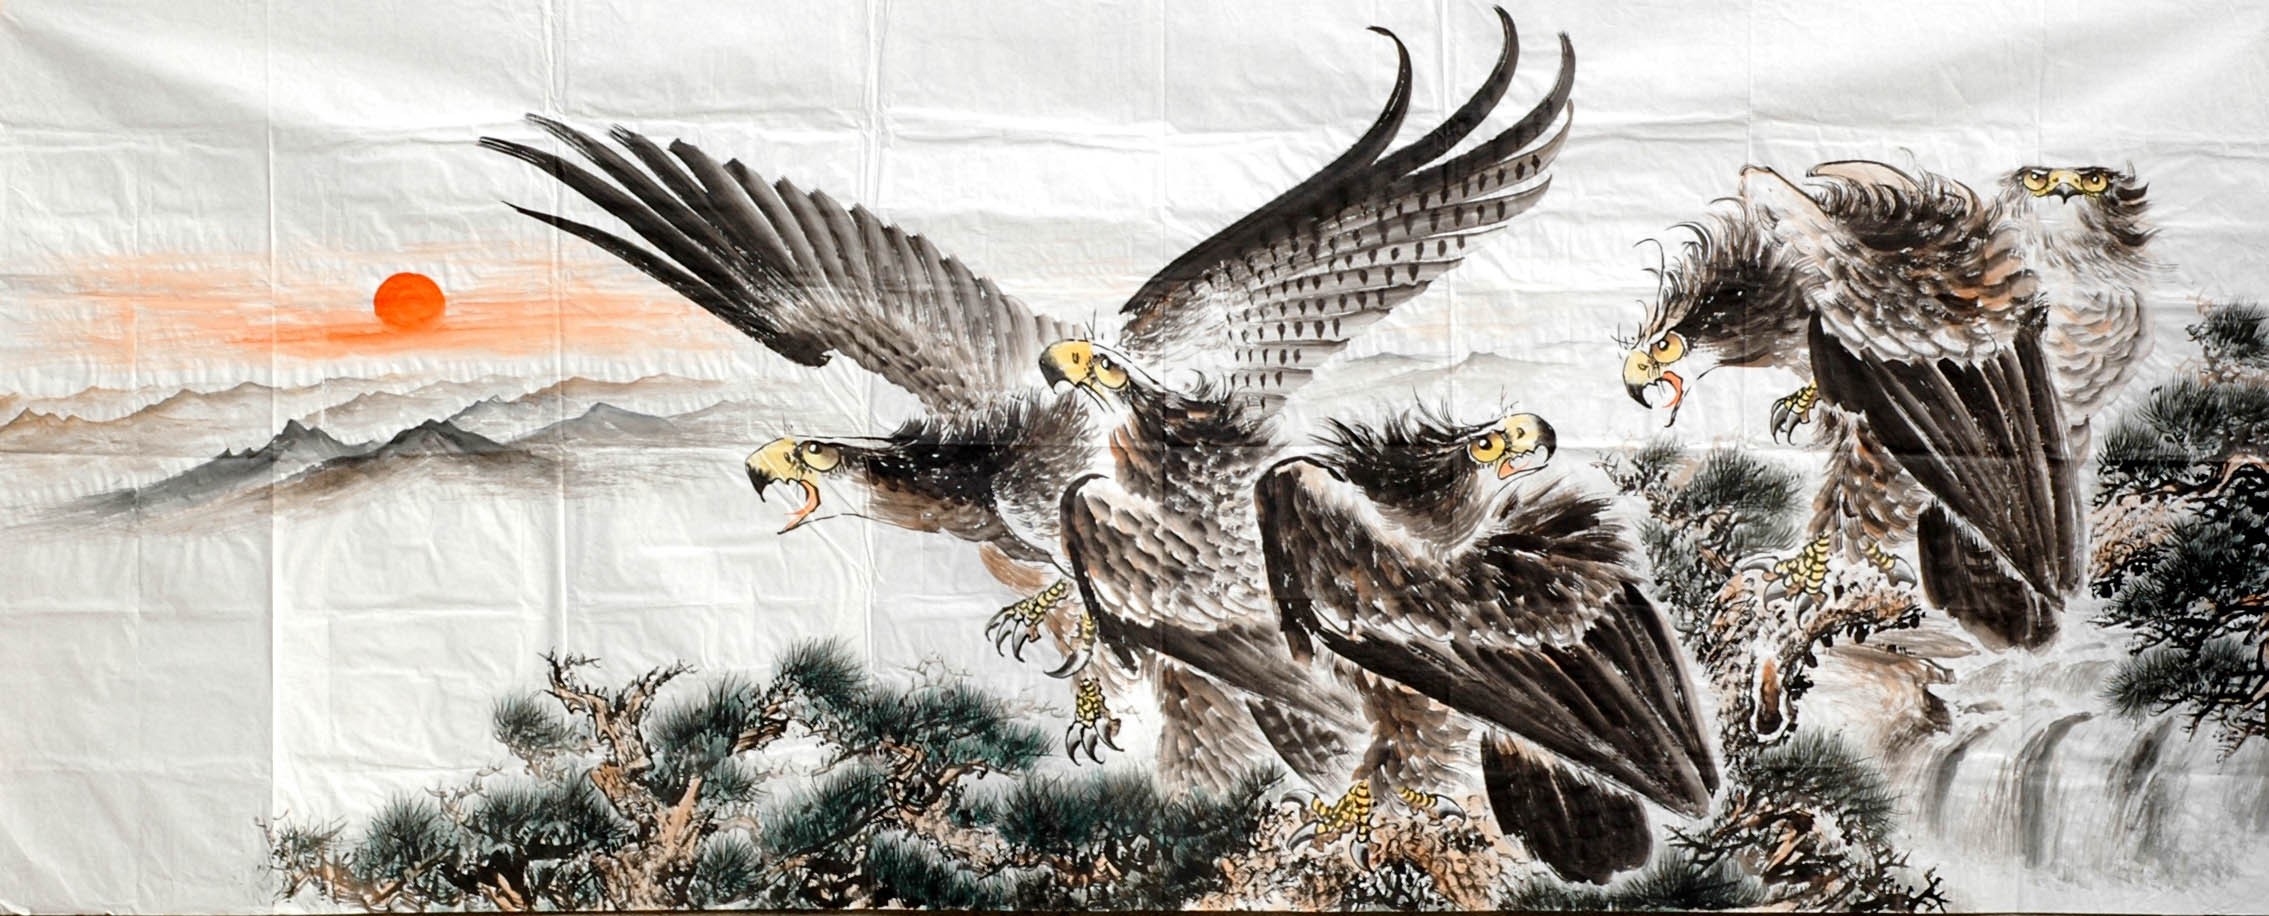 Chinese Eagle Painting - CNAG010036